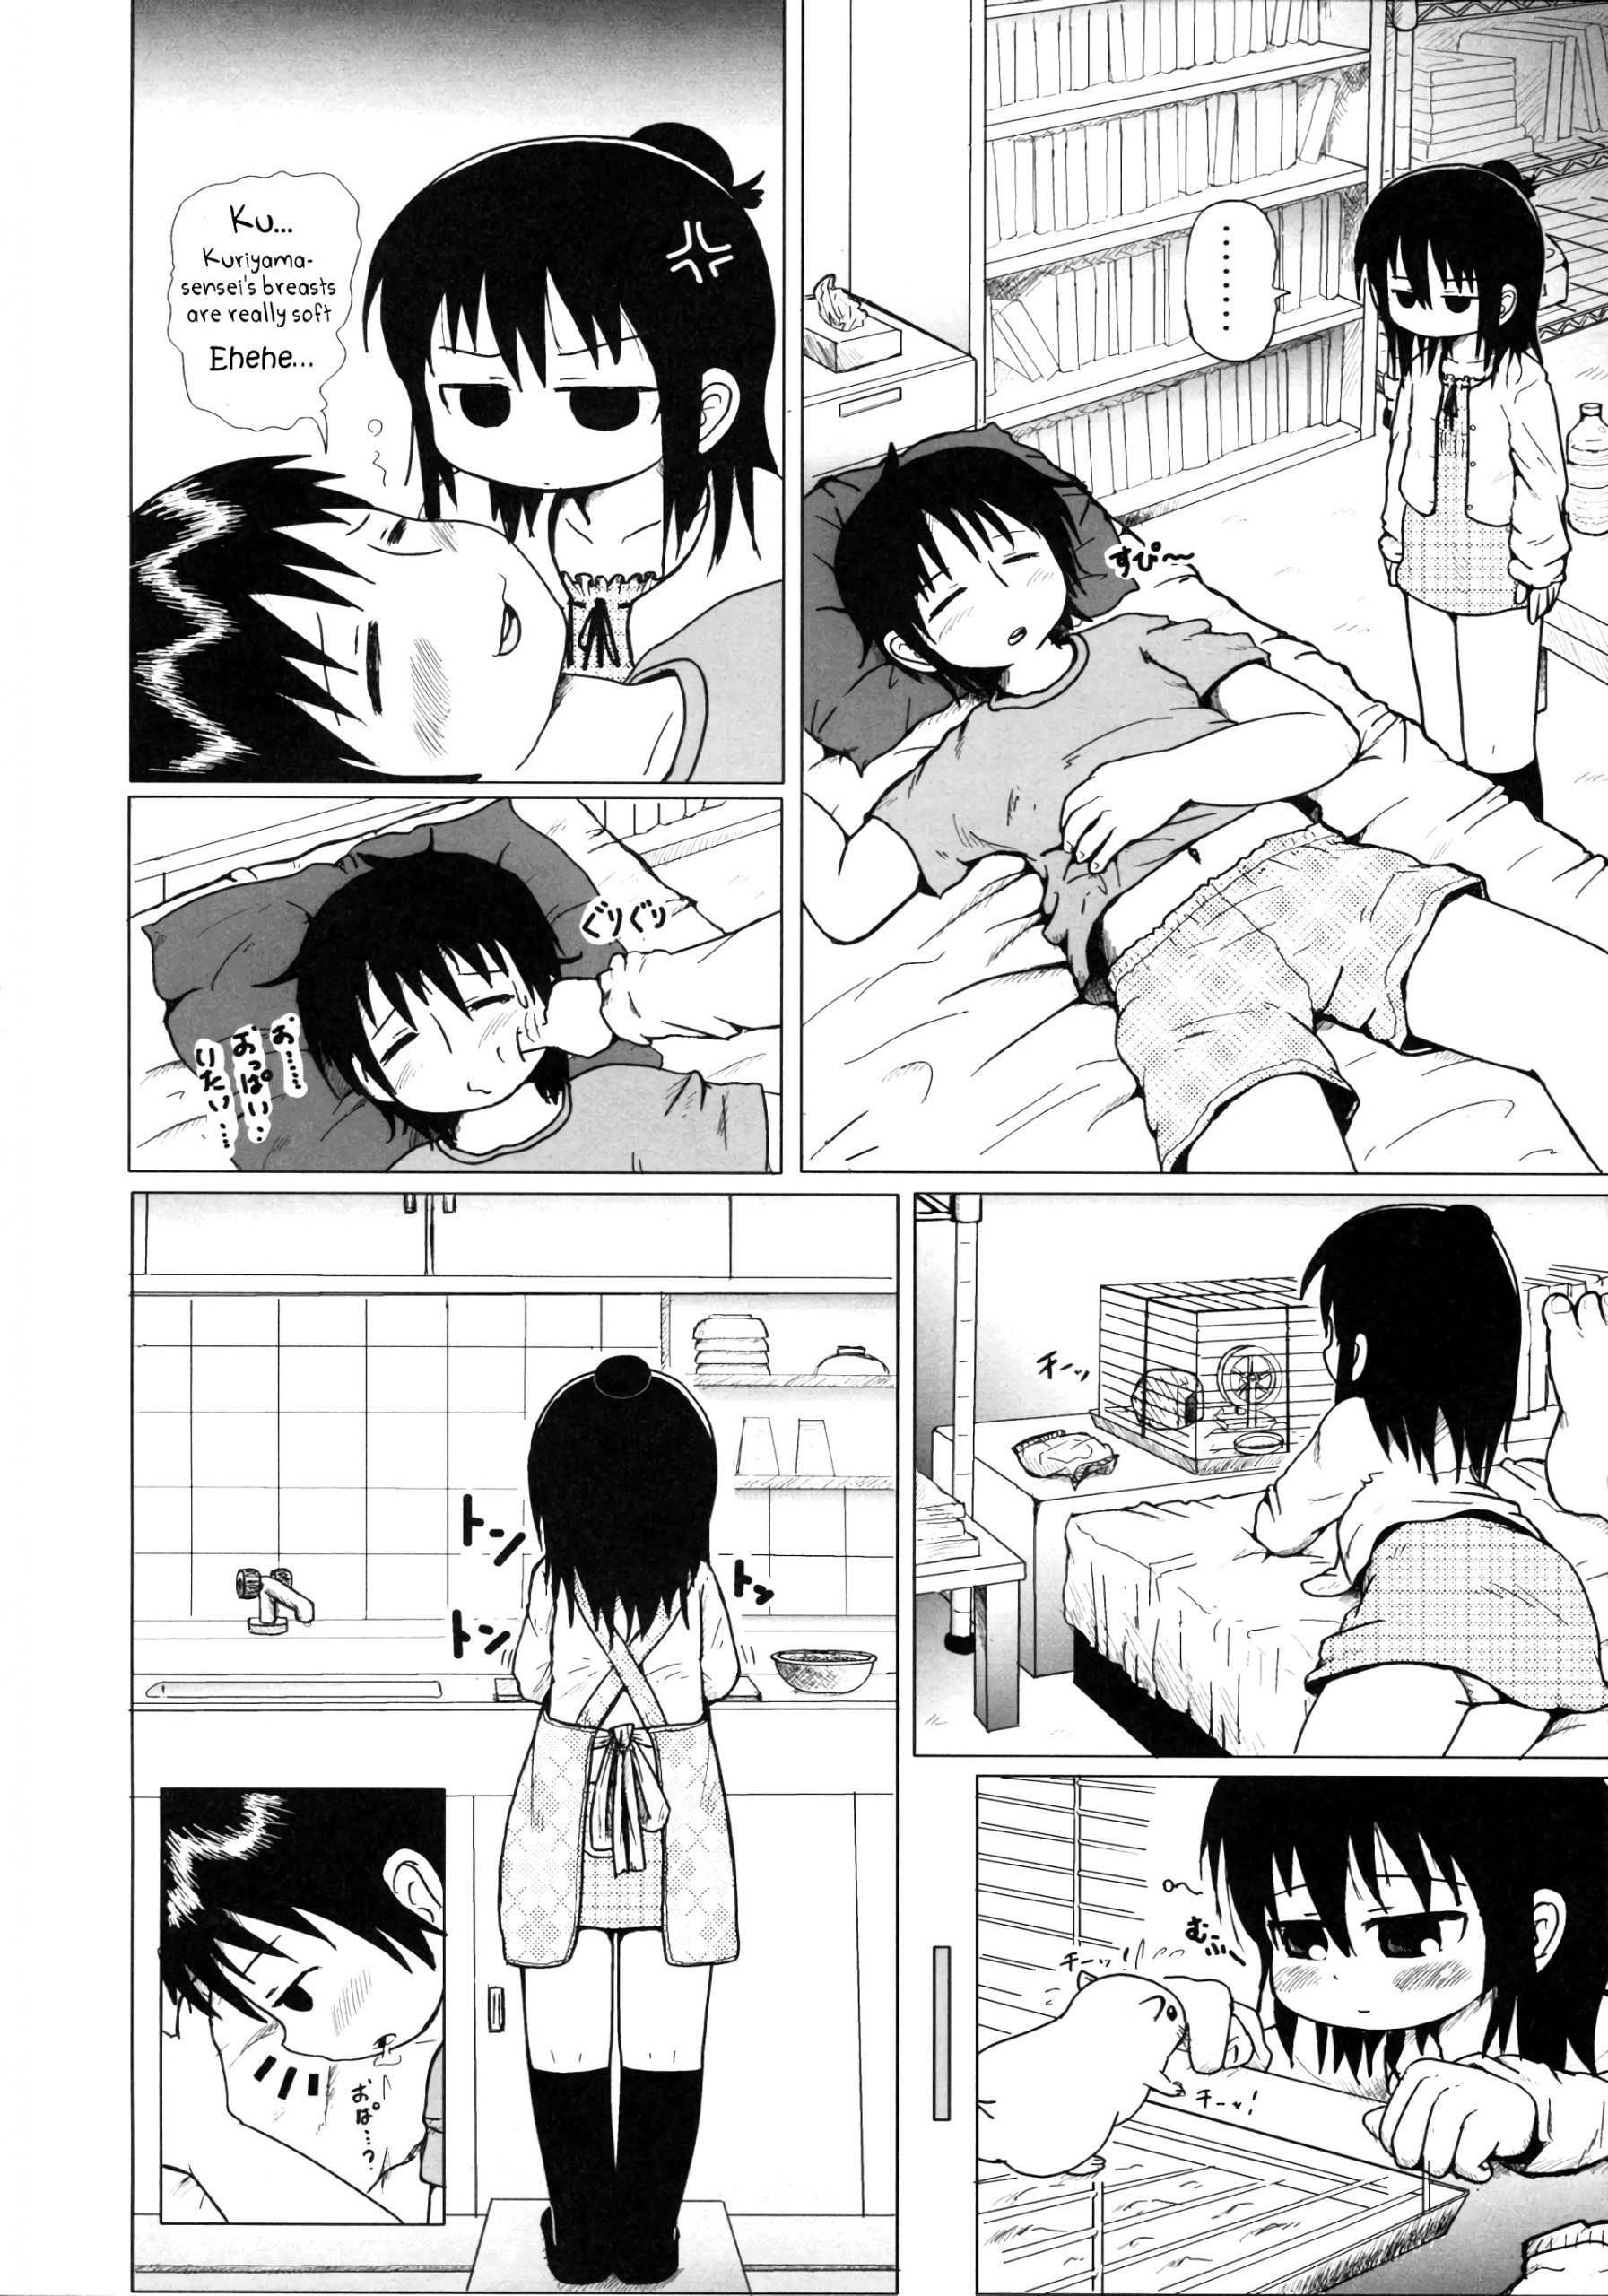 Daisuki Kura Girl hentai manga picture 3